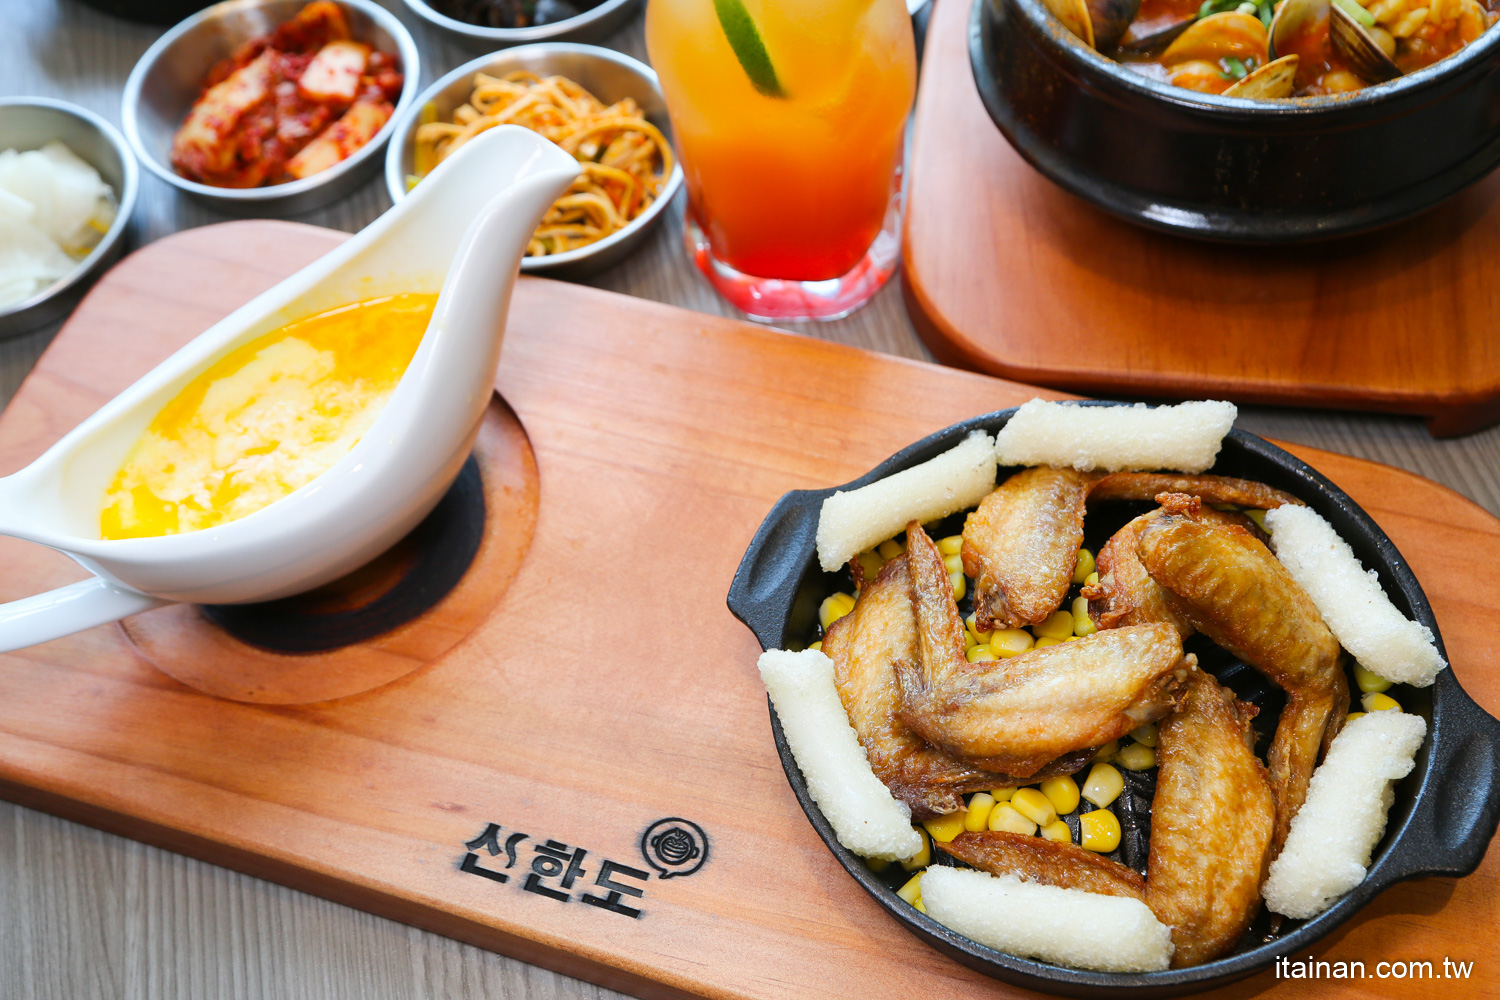 高雄美食,韓式料理,肉多多,韓國料理,辛韓道,高雄餐廳